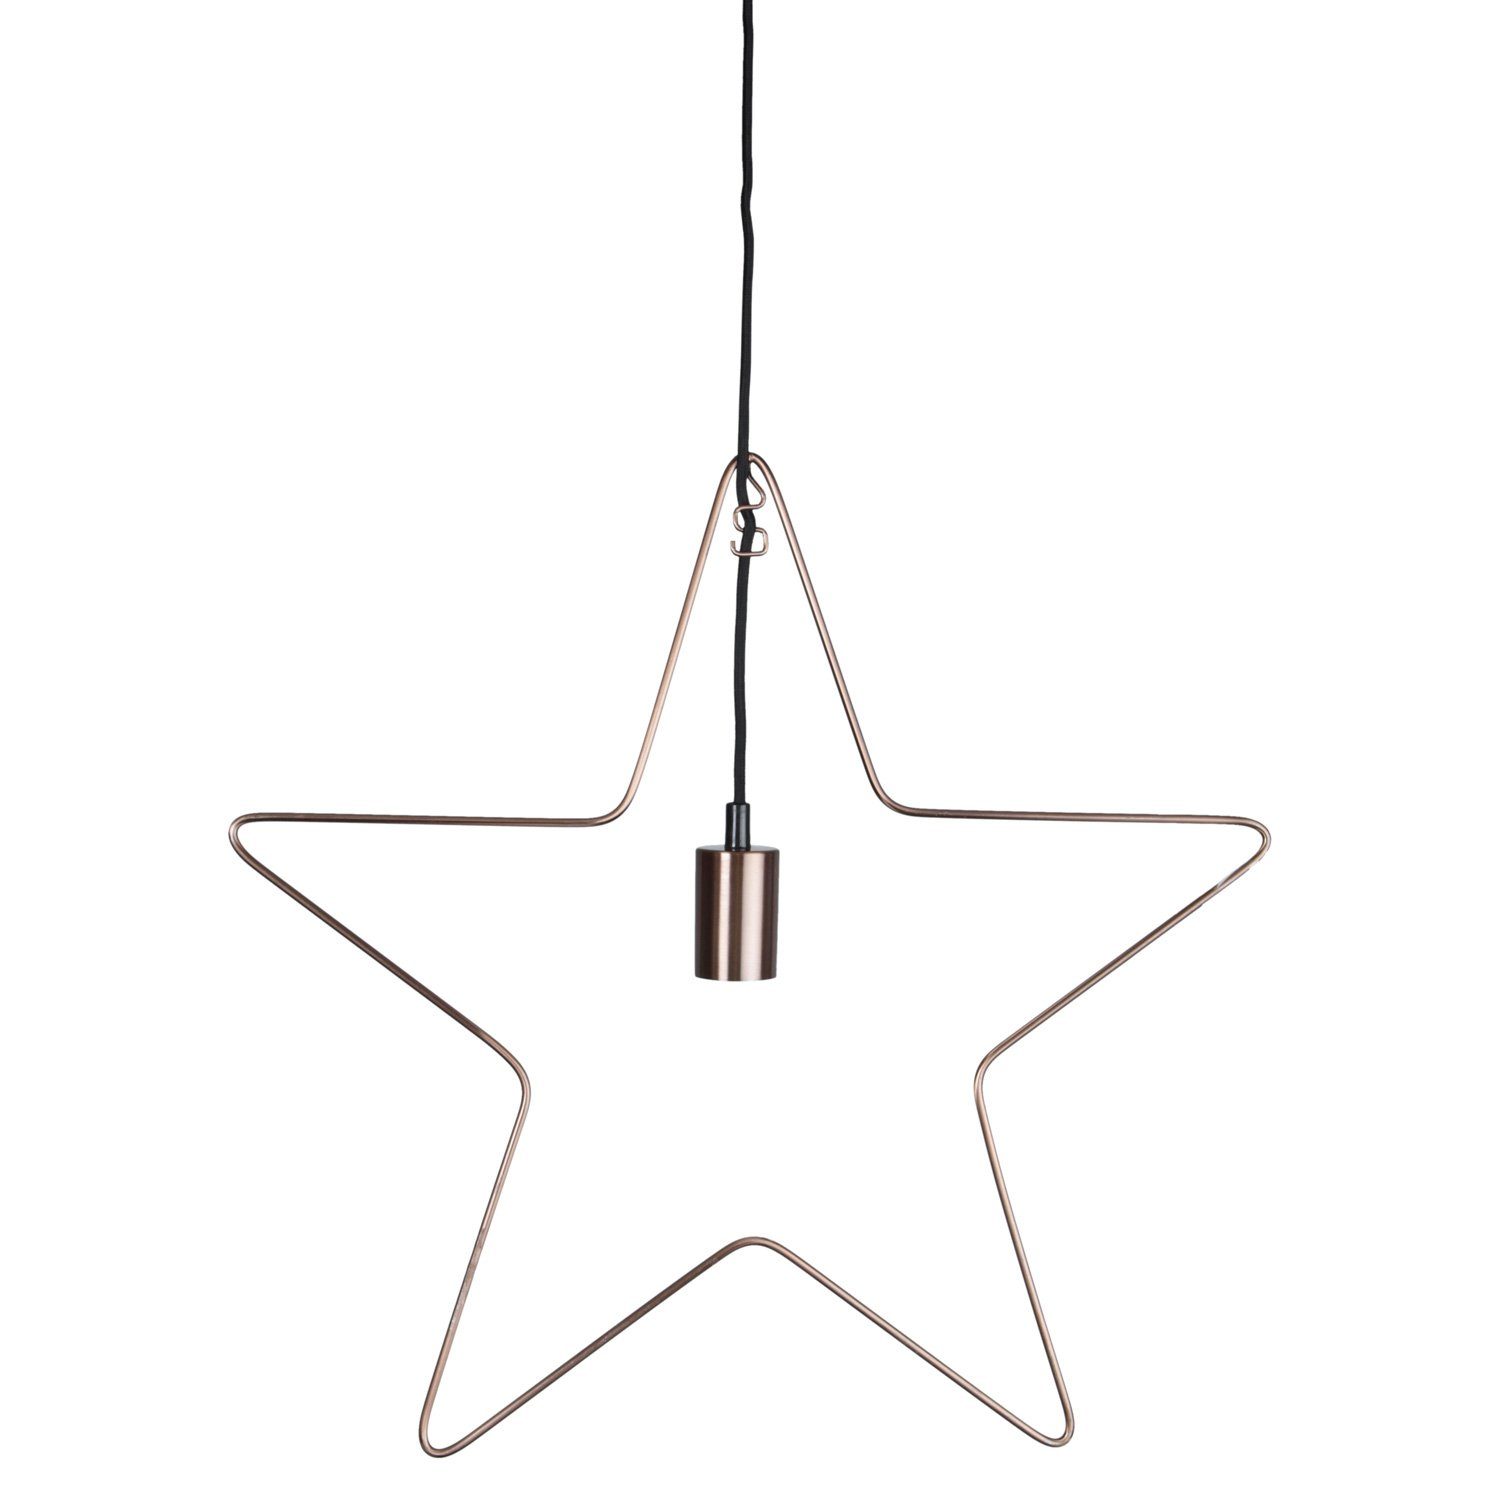 STAR TRADING LED Stern Dekoleuchte Hängestern 5-zackig 50cm Lampenhalterung E27 Stern kupfer